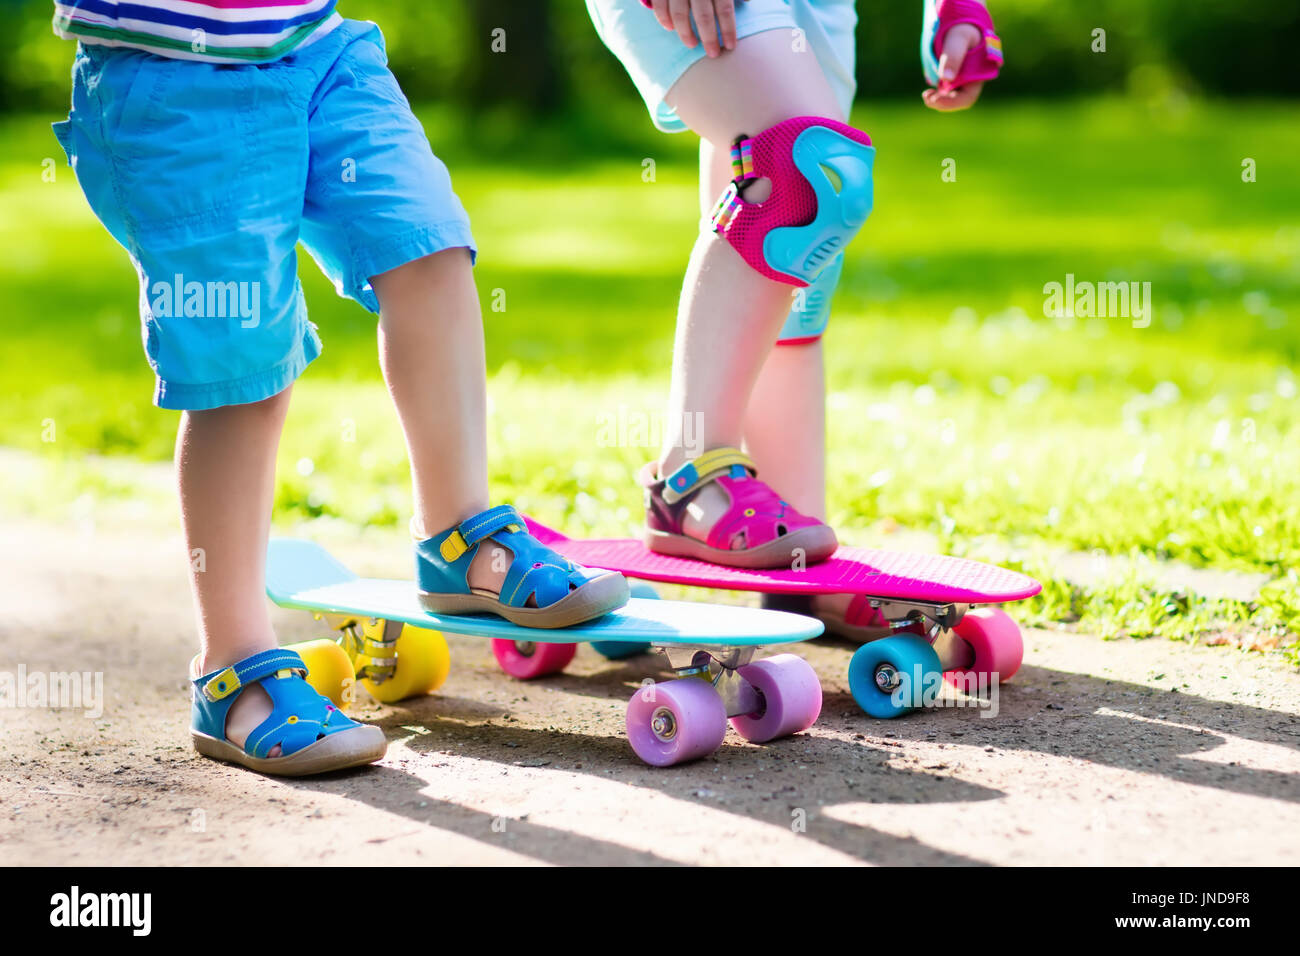 Kinder fahren Skateboard im Sommerpark. Kleine Mädchen und Jungen lernen, Skateboard  fahren, helfen und unterstützen uns gegenseitig. Aktiven outdoor-Sport für  Kinder Stockfotografie - Alamy